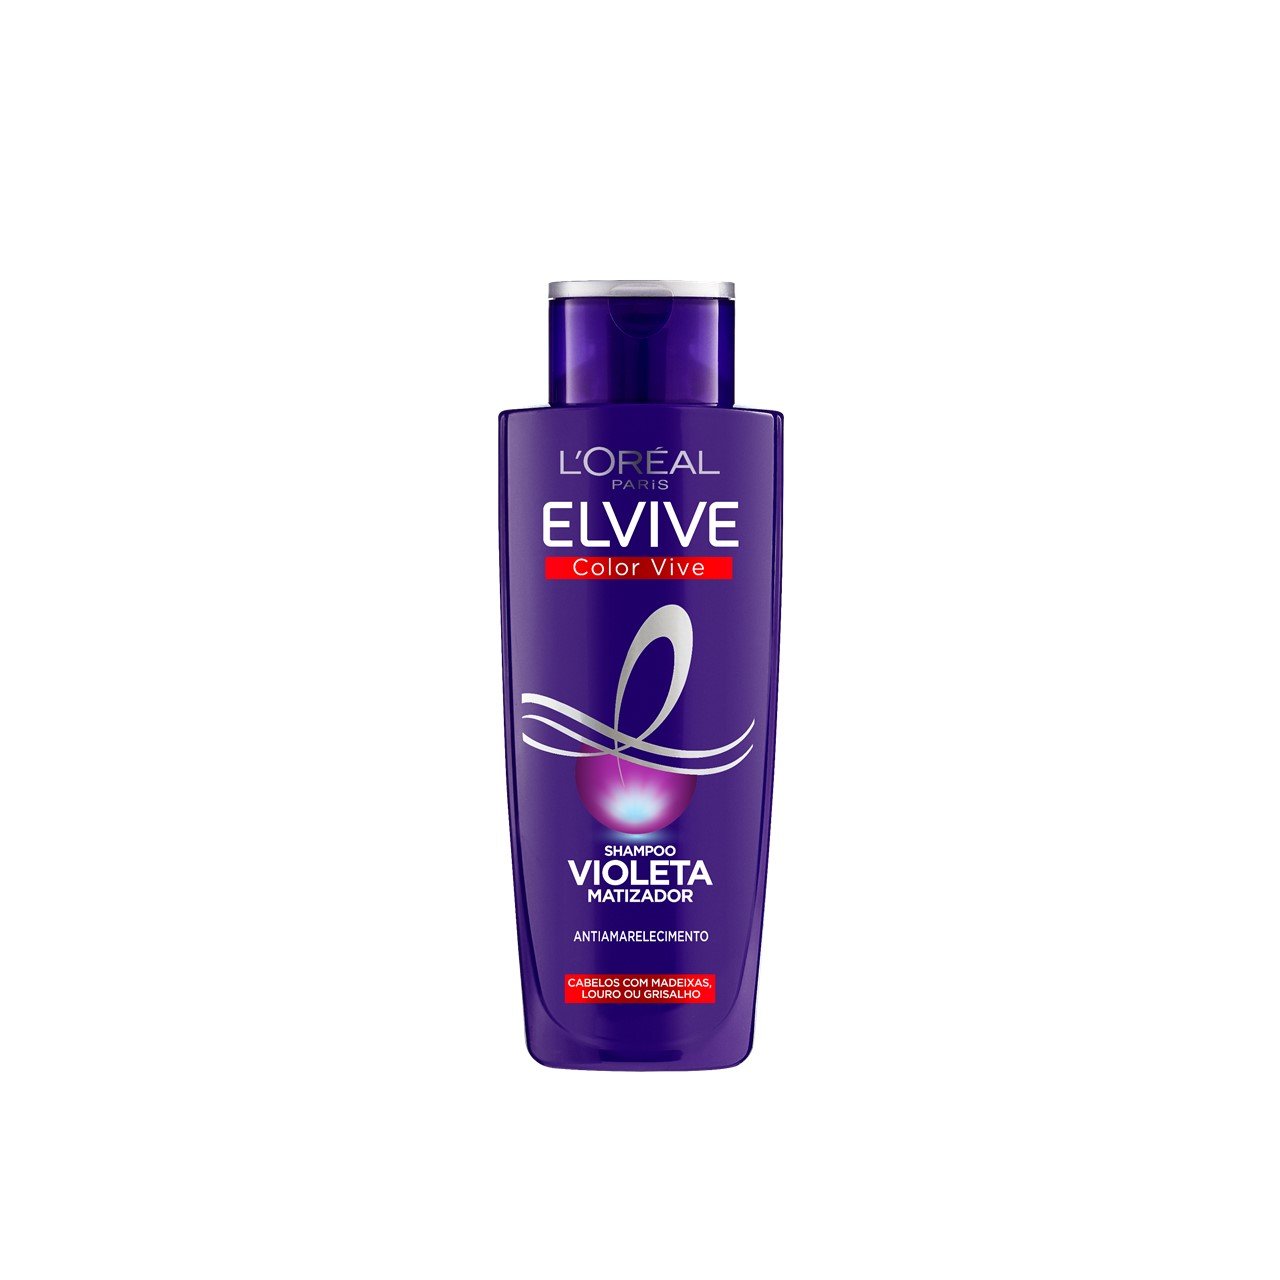 color vive purple szampon